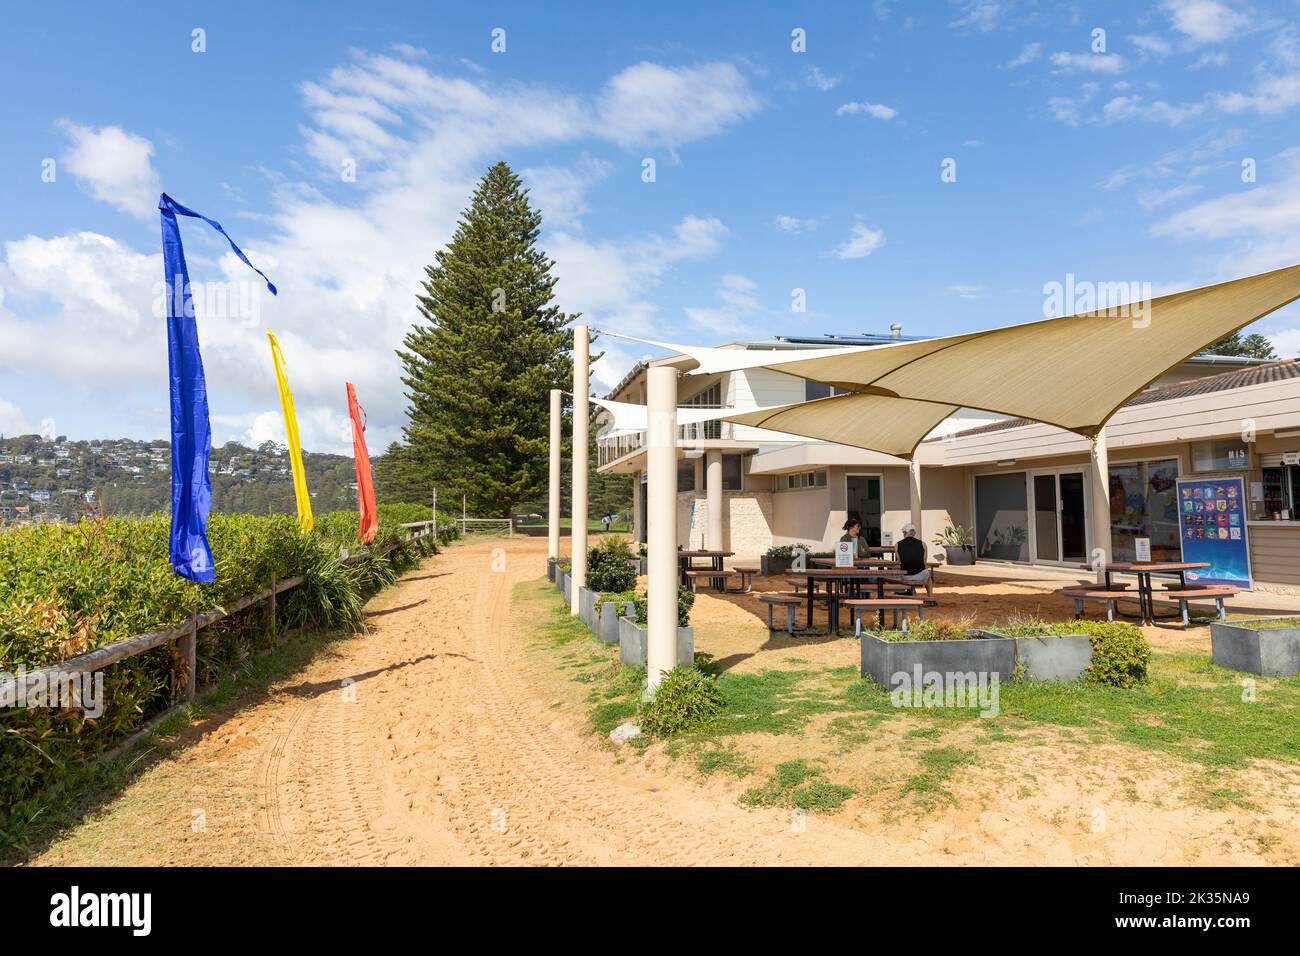 North Palm Beach surf club a Sydney, noto anche come Summer Bay surf club e chiosco di cibo dalla televisione Neighbours, NSW, Australia Foto Stock